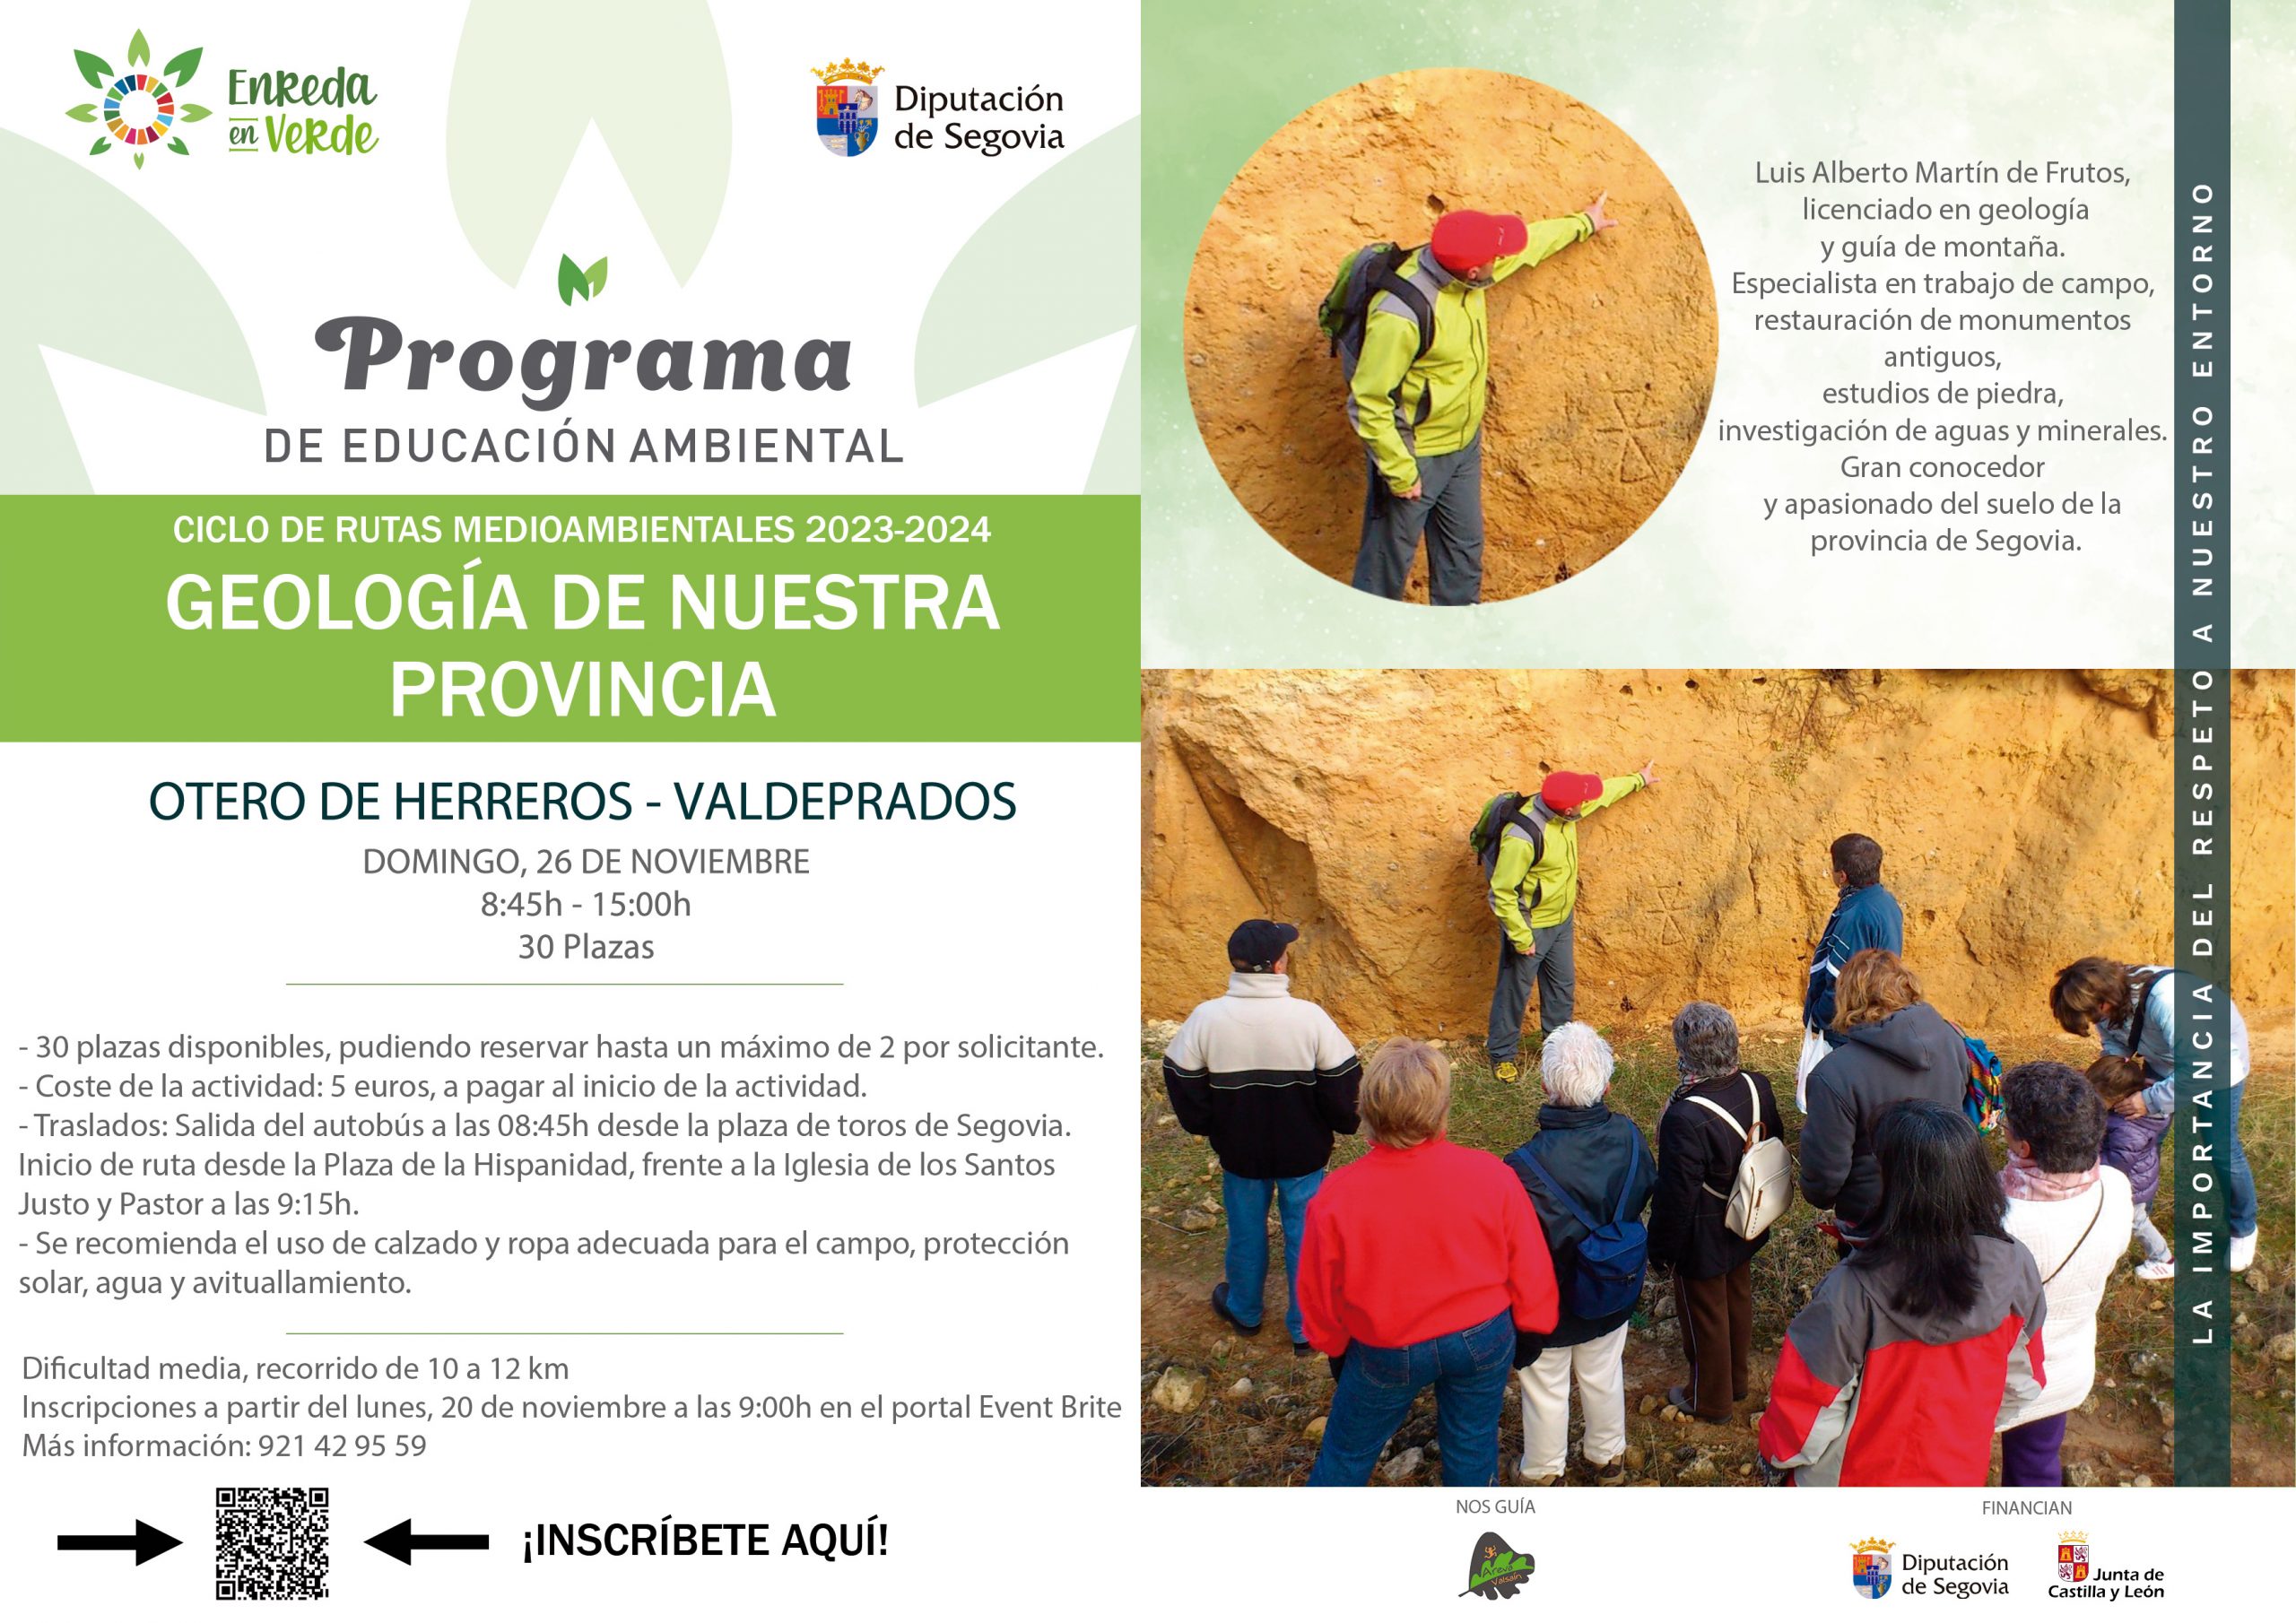 Ciclo de rutas 'Enreda en verde' - Geología de nuestra provincia (Otero de Herreros - Valdeprados)